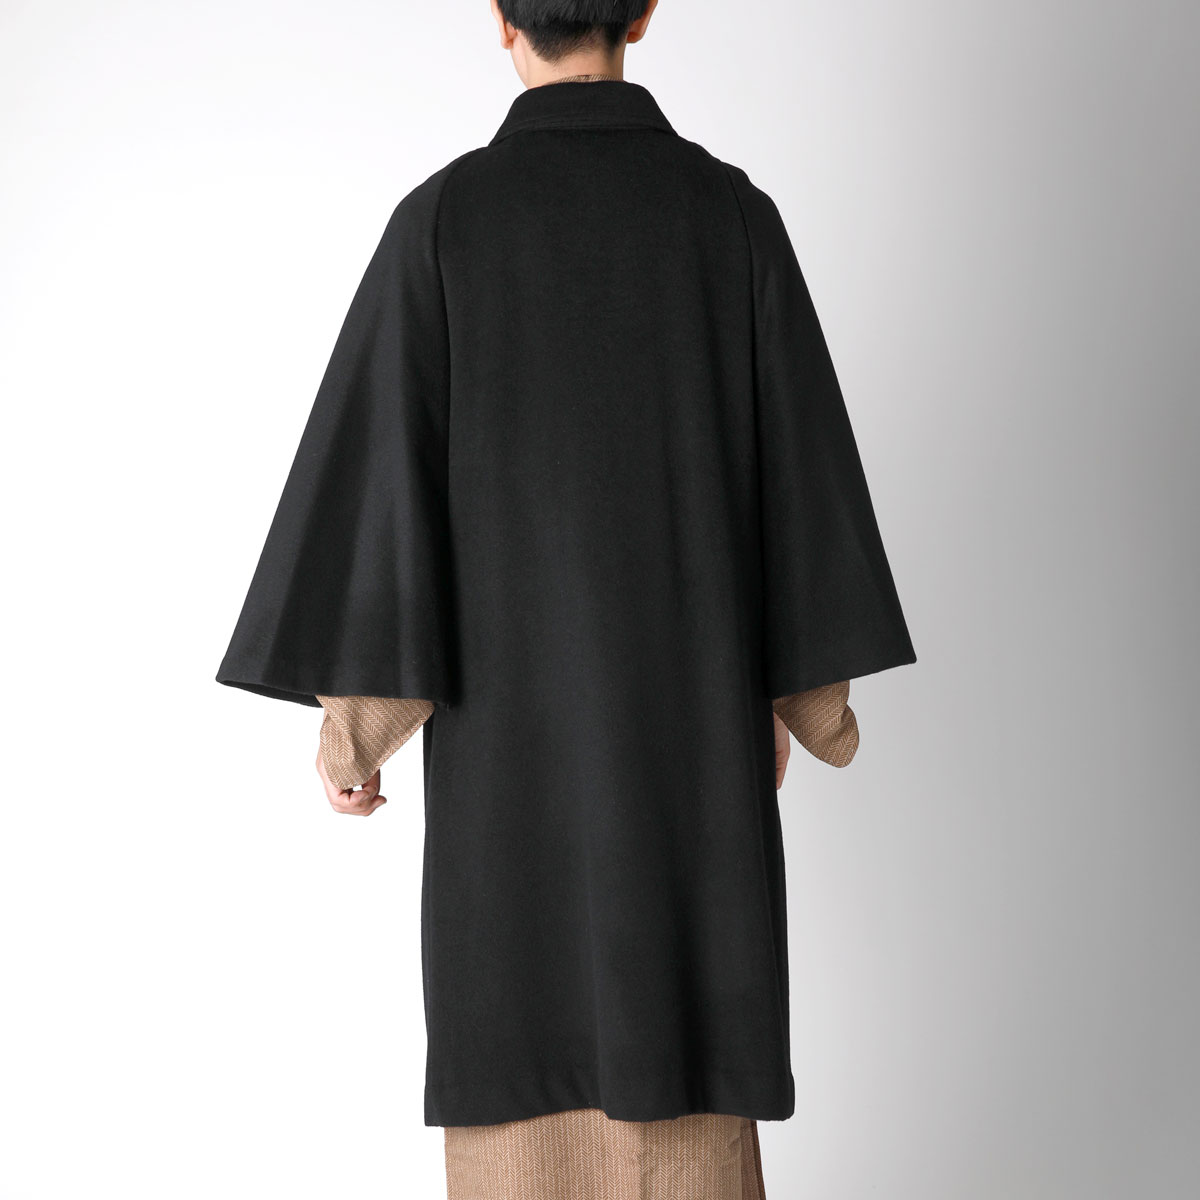 着物コートの選び方 | 男着物の加藤商店【公式】